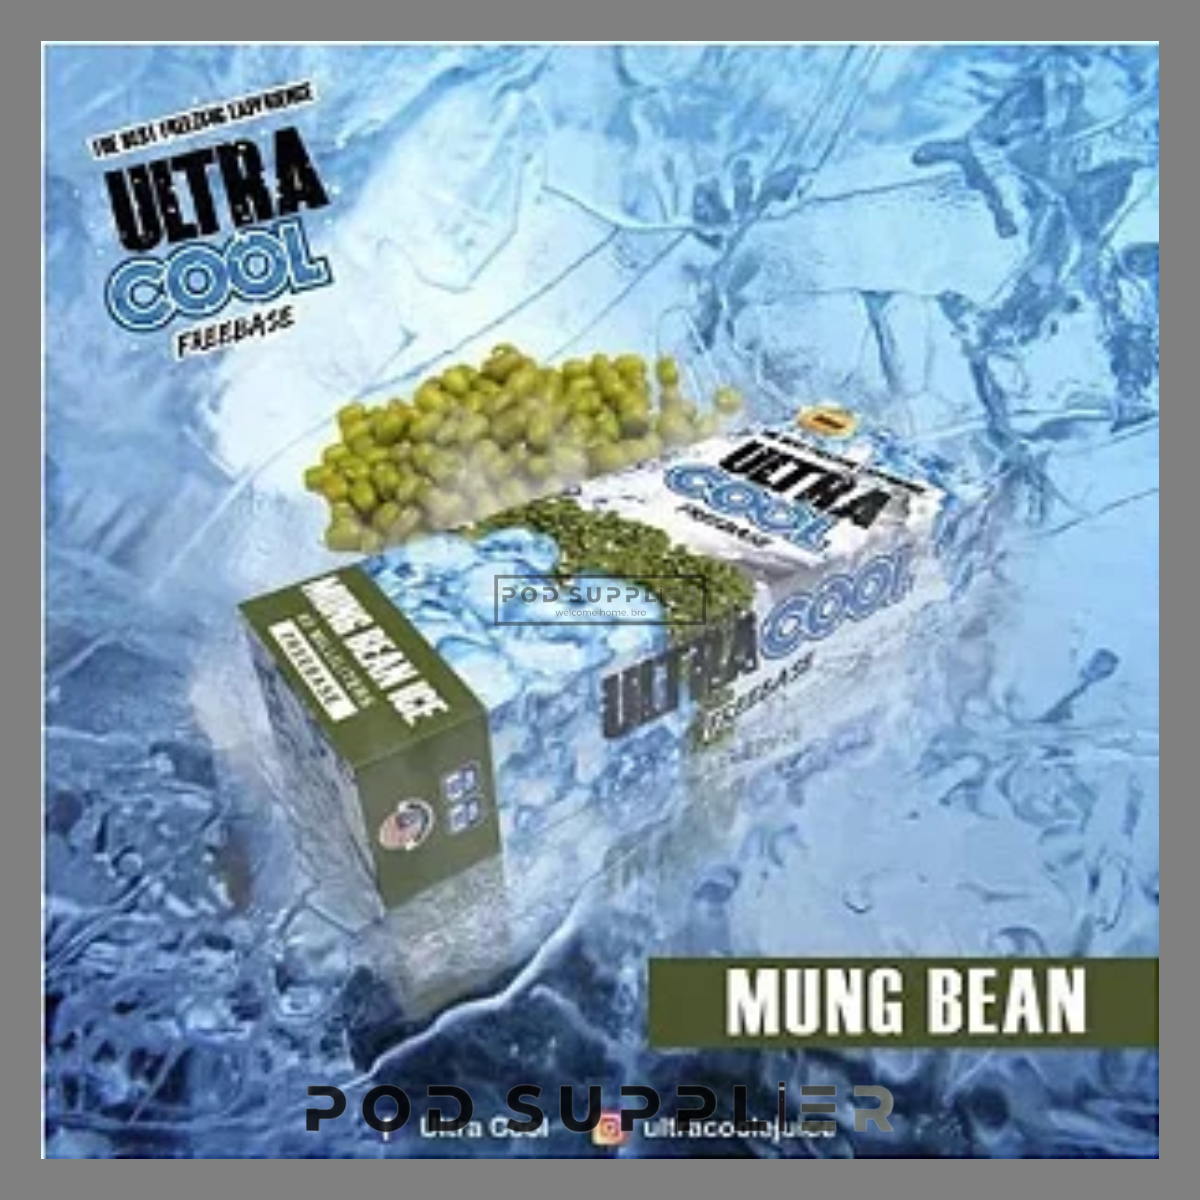  Mung Bean Ice ( Đậu Xanh Lạnh ) By Ultra Cool Freebase 